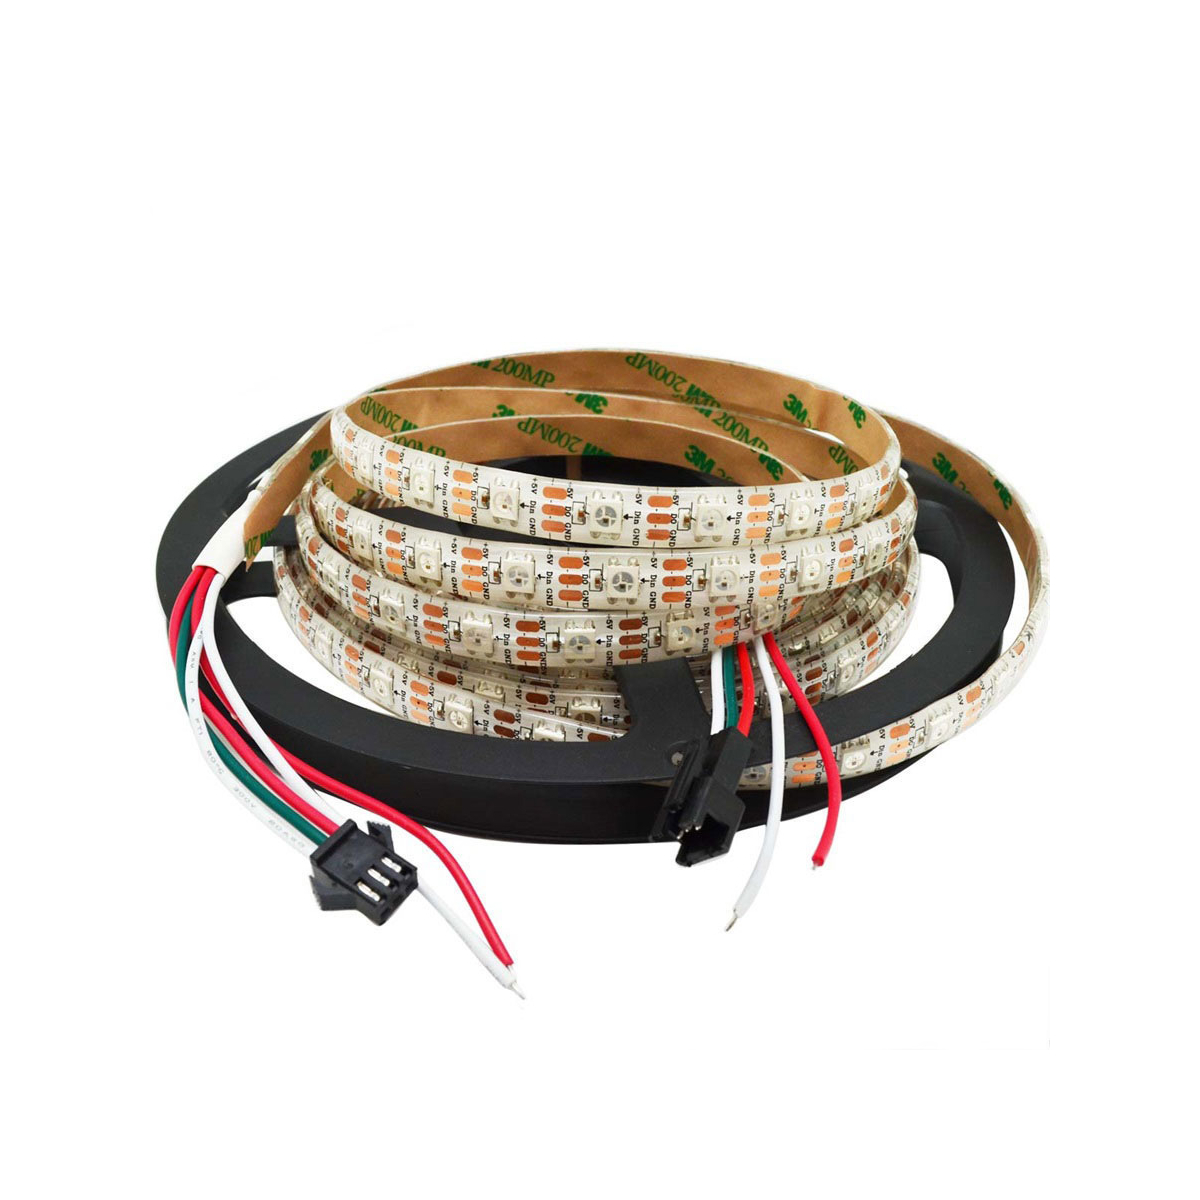 Set RGB-LED-Streifen 2x5m + Netzteil + Steuerung + PIR-Sensor, Reichweite  2m, 2,5W/m 